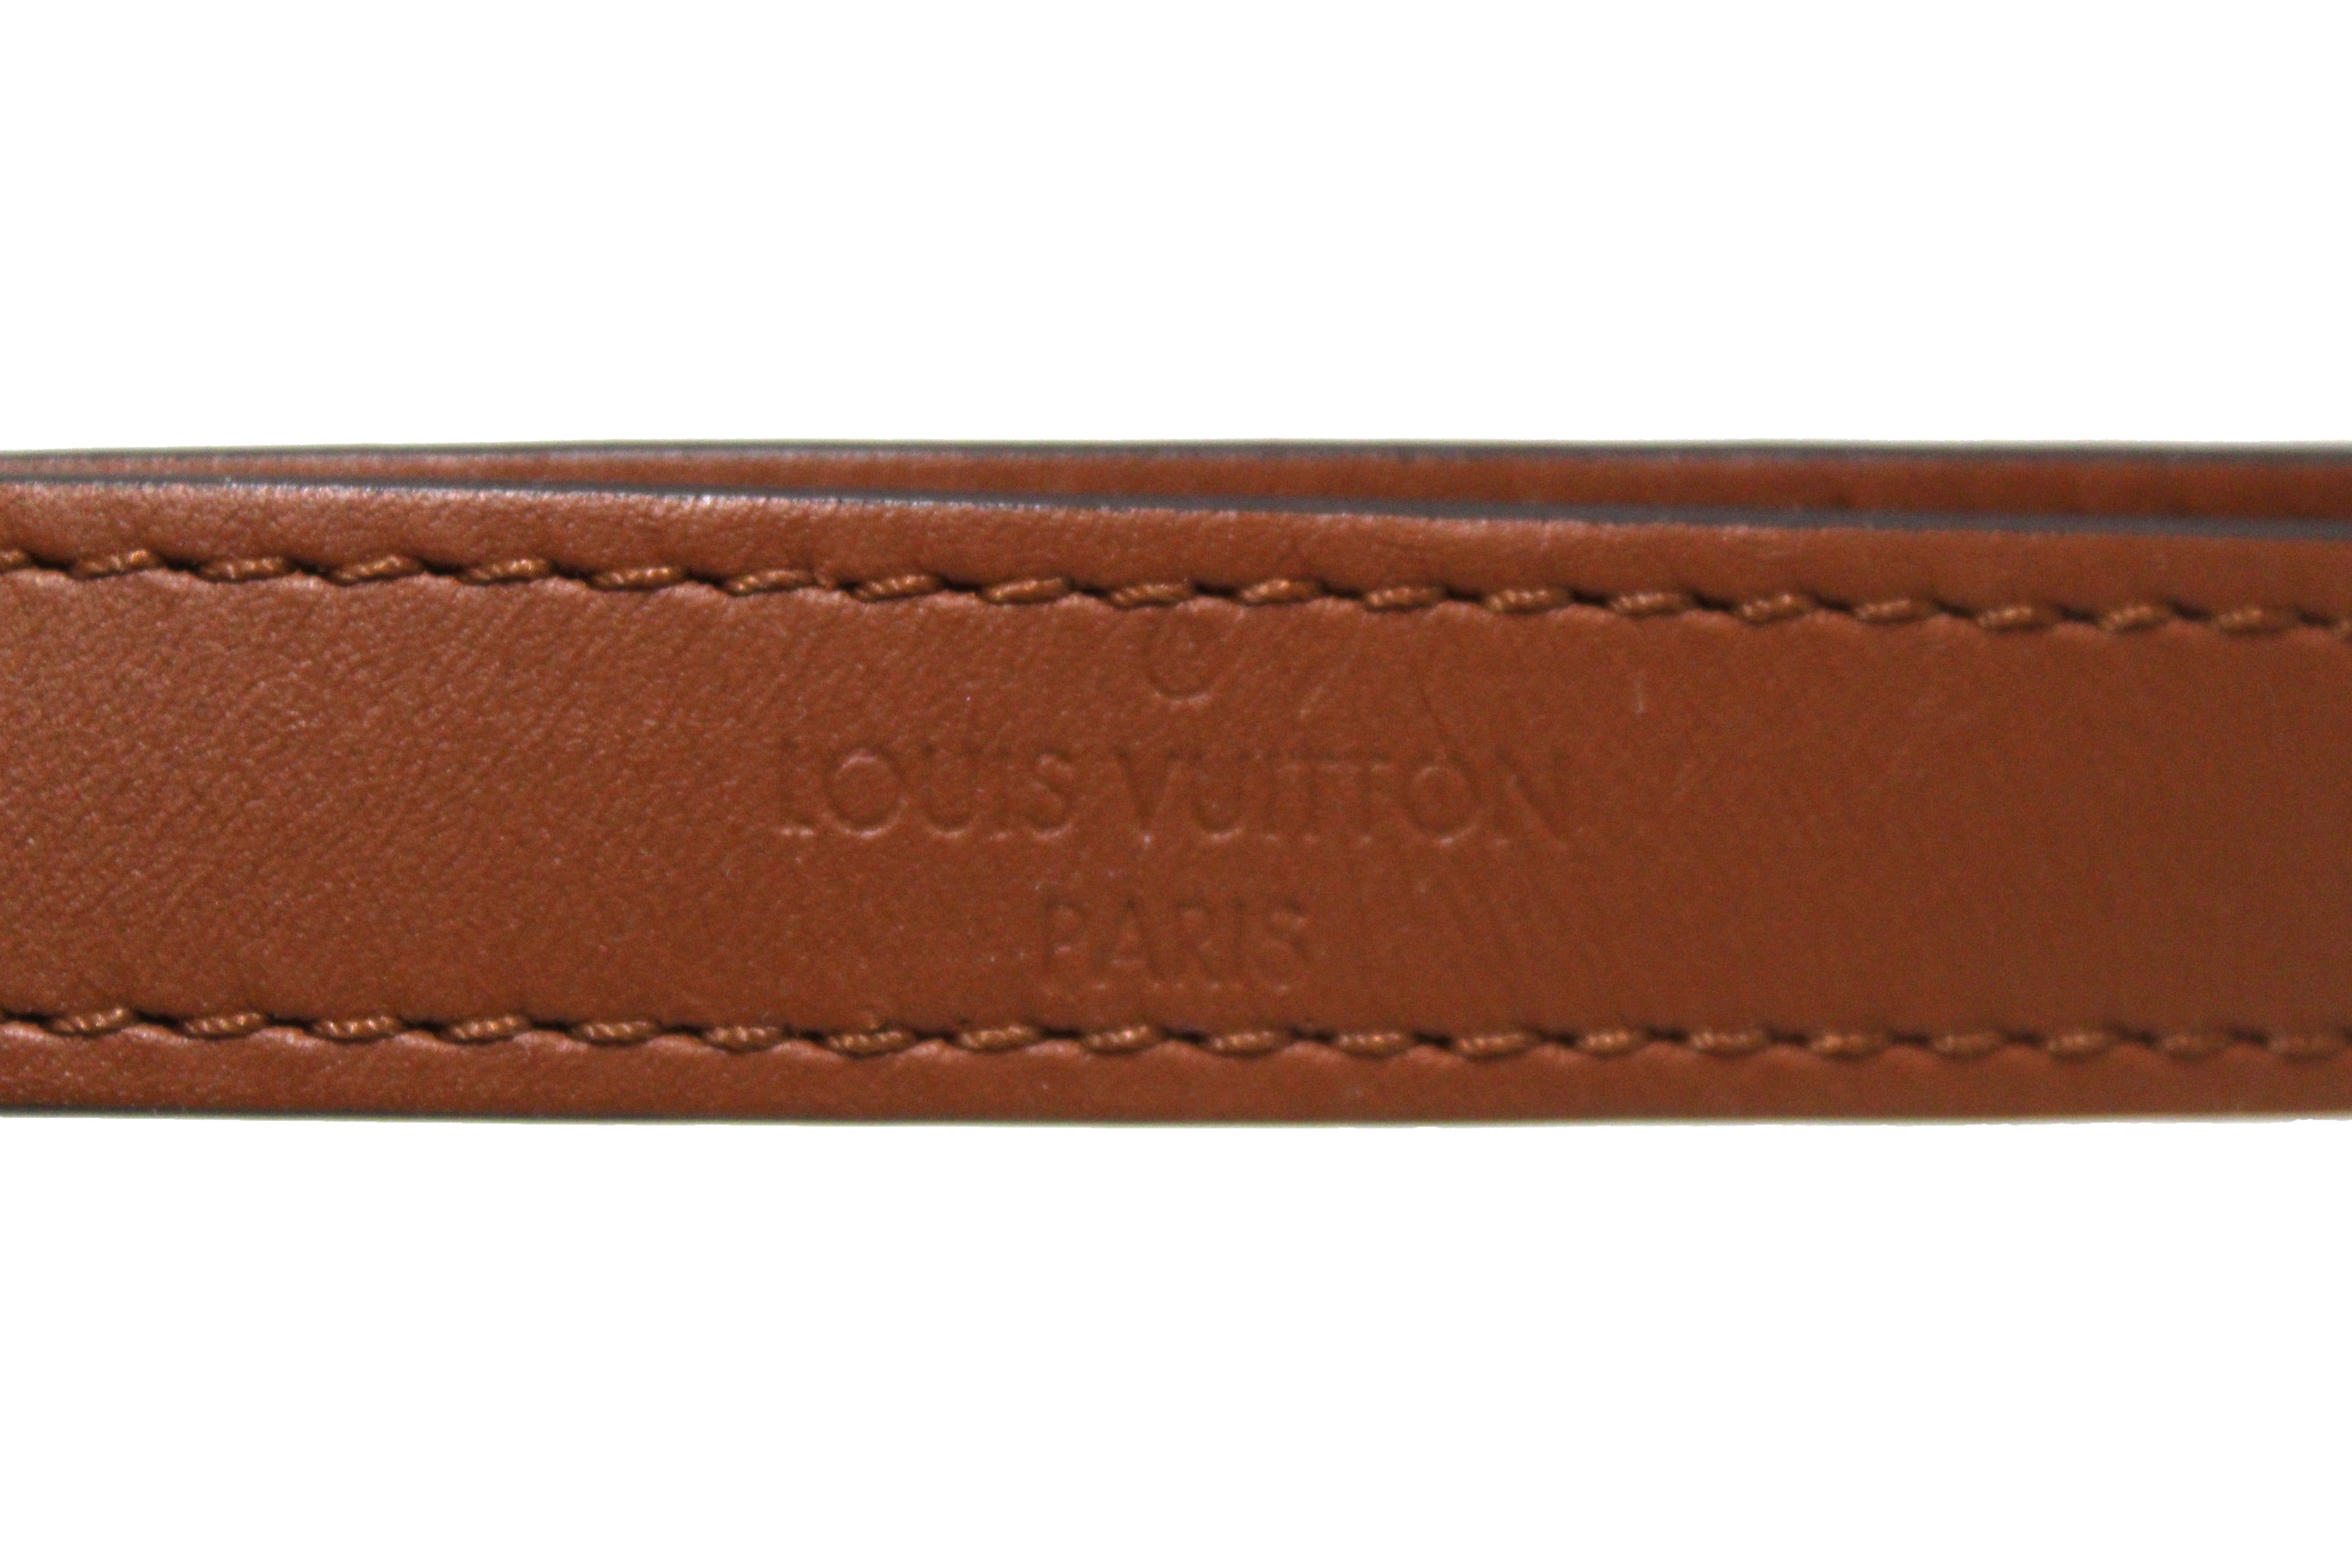 Louis Vuitton Paris Form Text Outdoor Doormat - REVER LAVIE